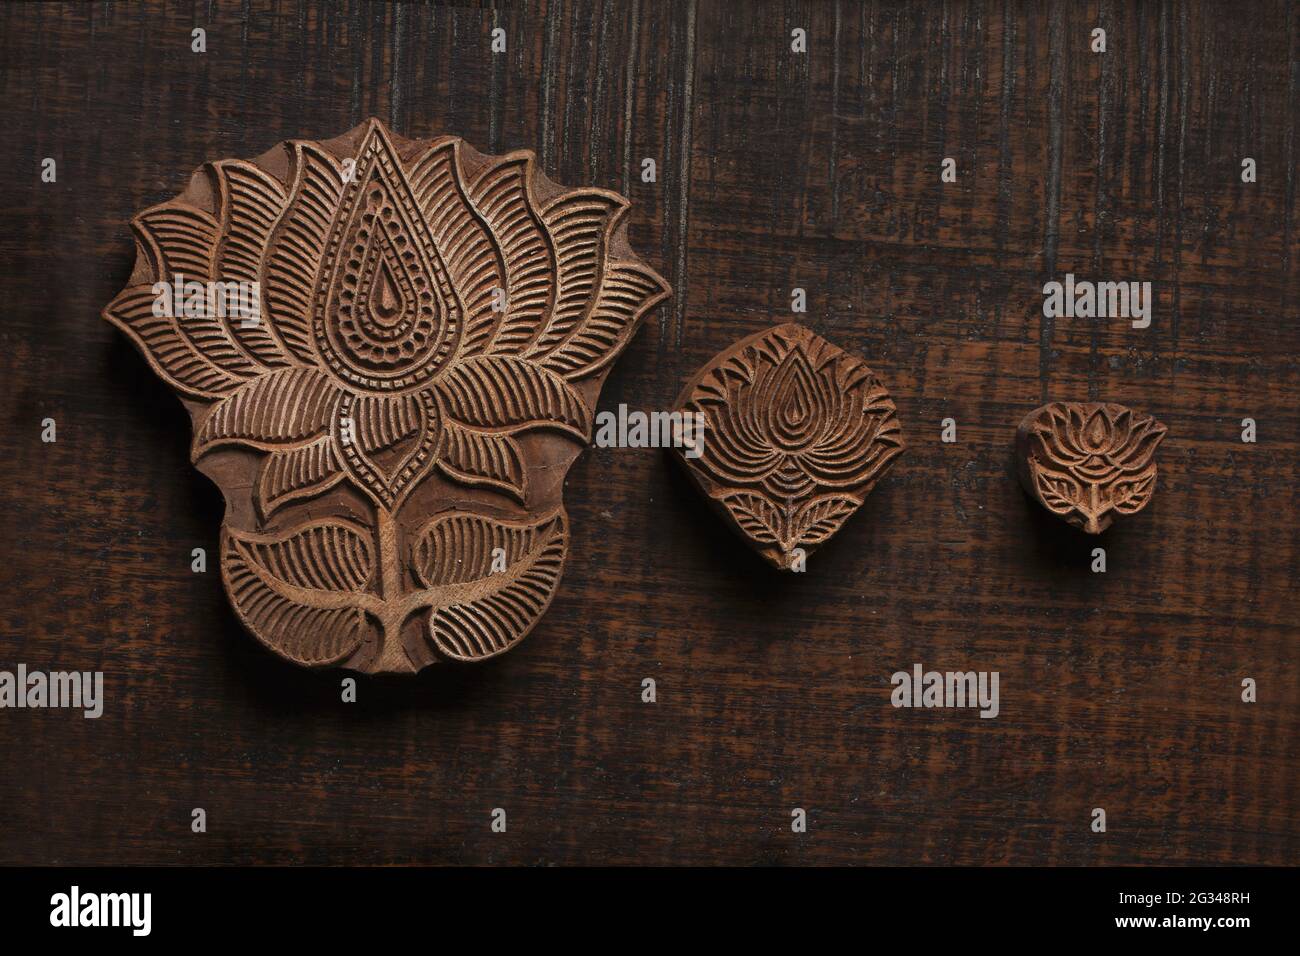 Verschiedene Größe von Lotus Form Holzblock Muster für Textildruck auf rustikalem Holz Hintergrund. Blockdruck, Rajasthan Indien Blockdruck, Holz b Stockfoto